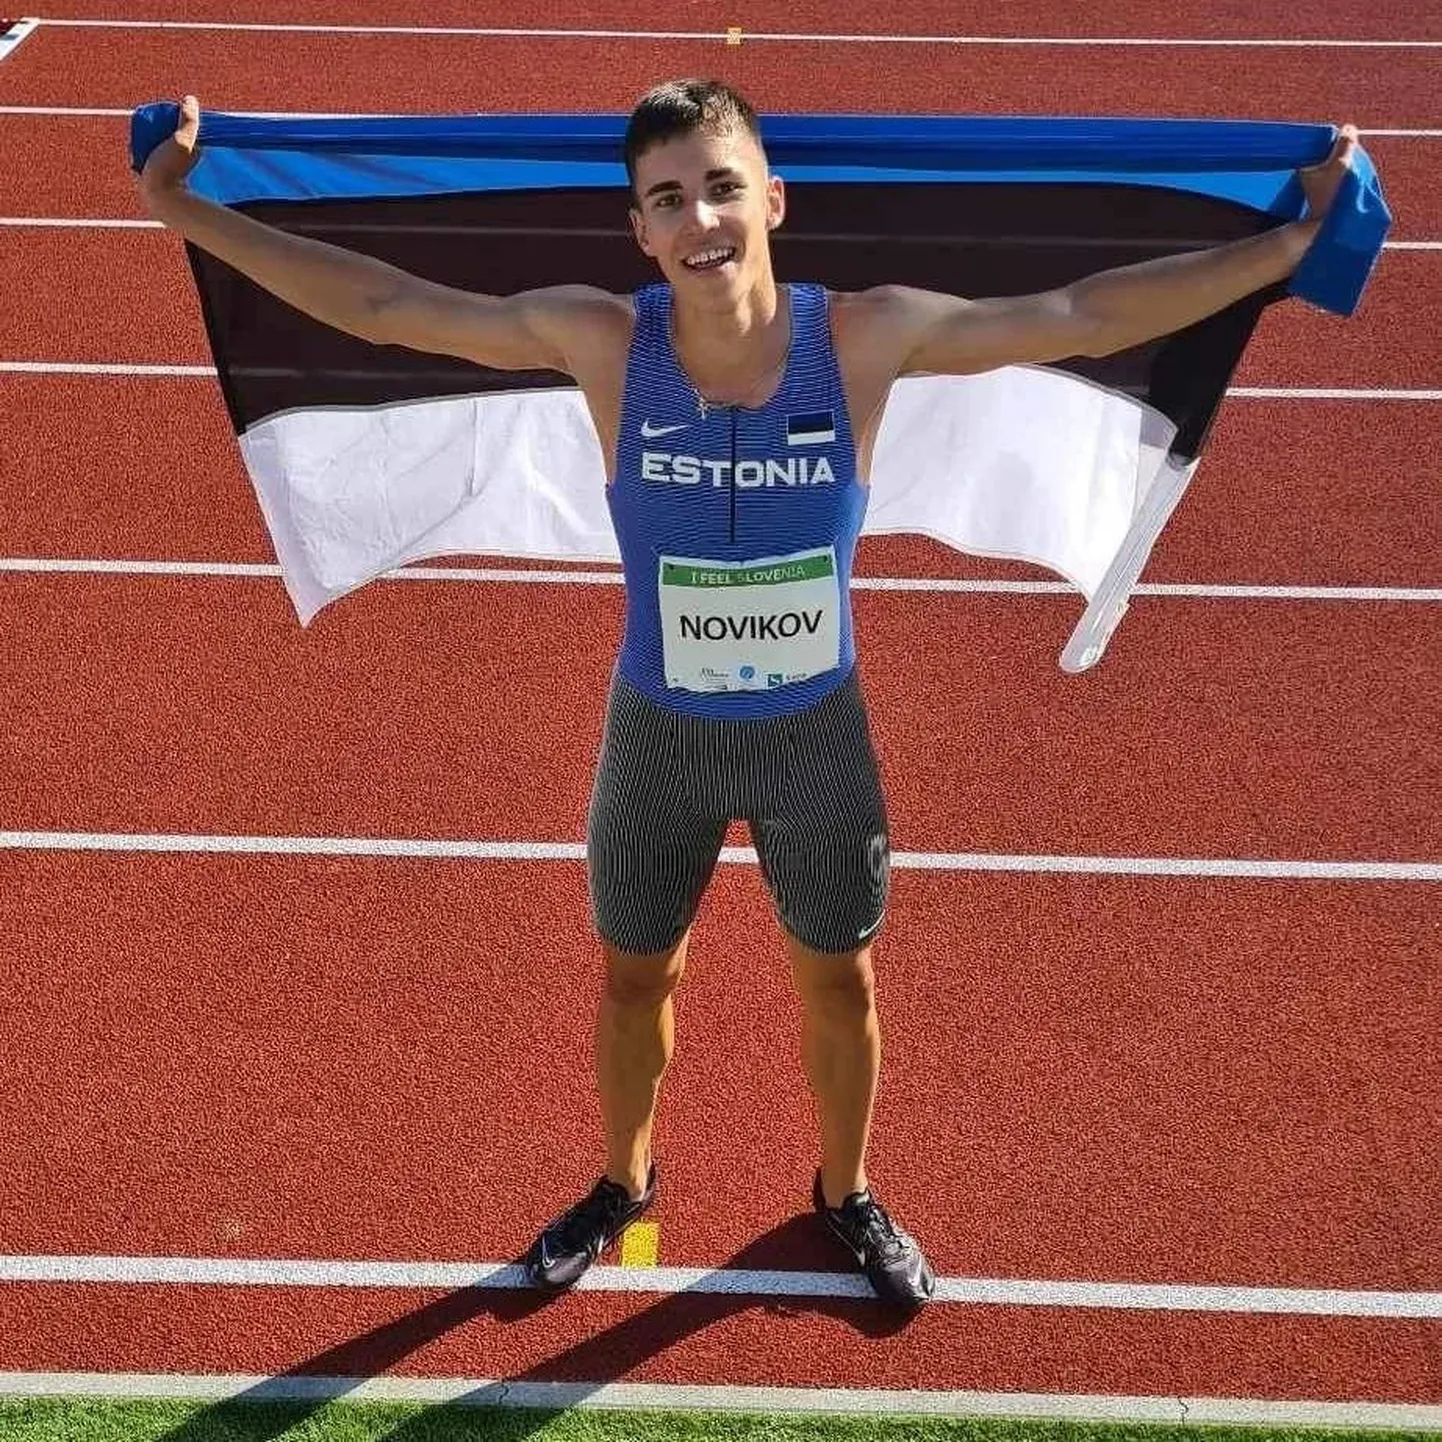 Радующийся бронзовой медали Савва Новиков после забега на стадионе "Марибора" поднял за плечами сине-черно-белый флаг.